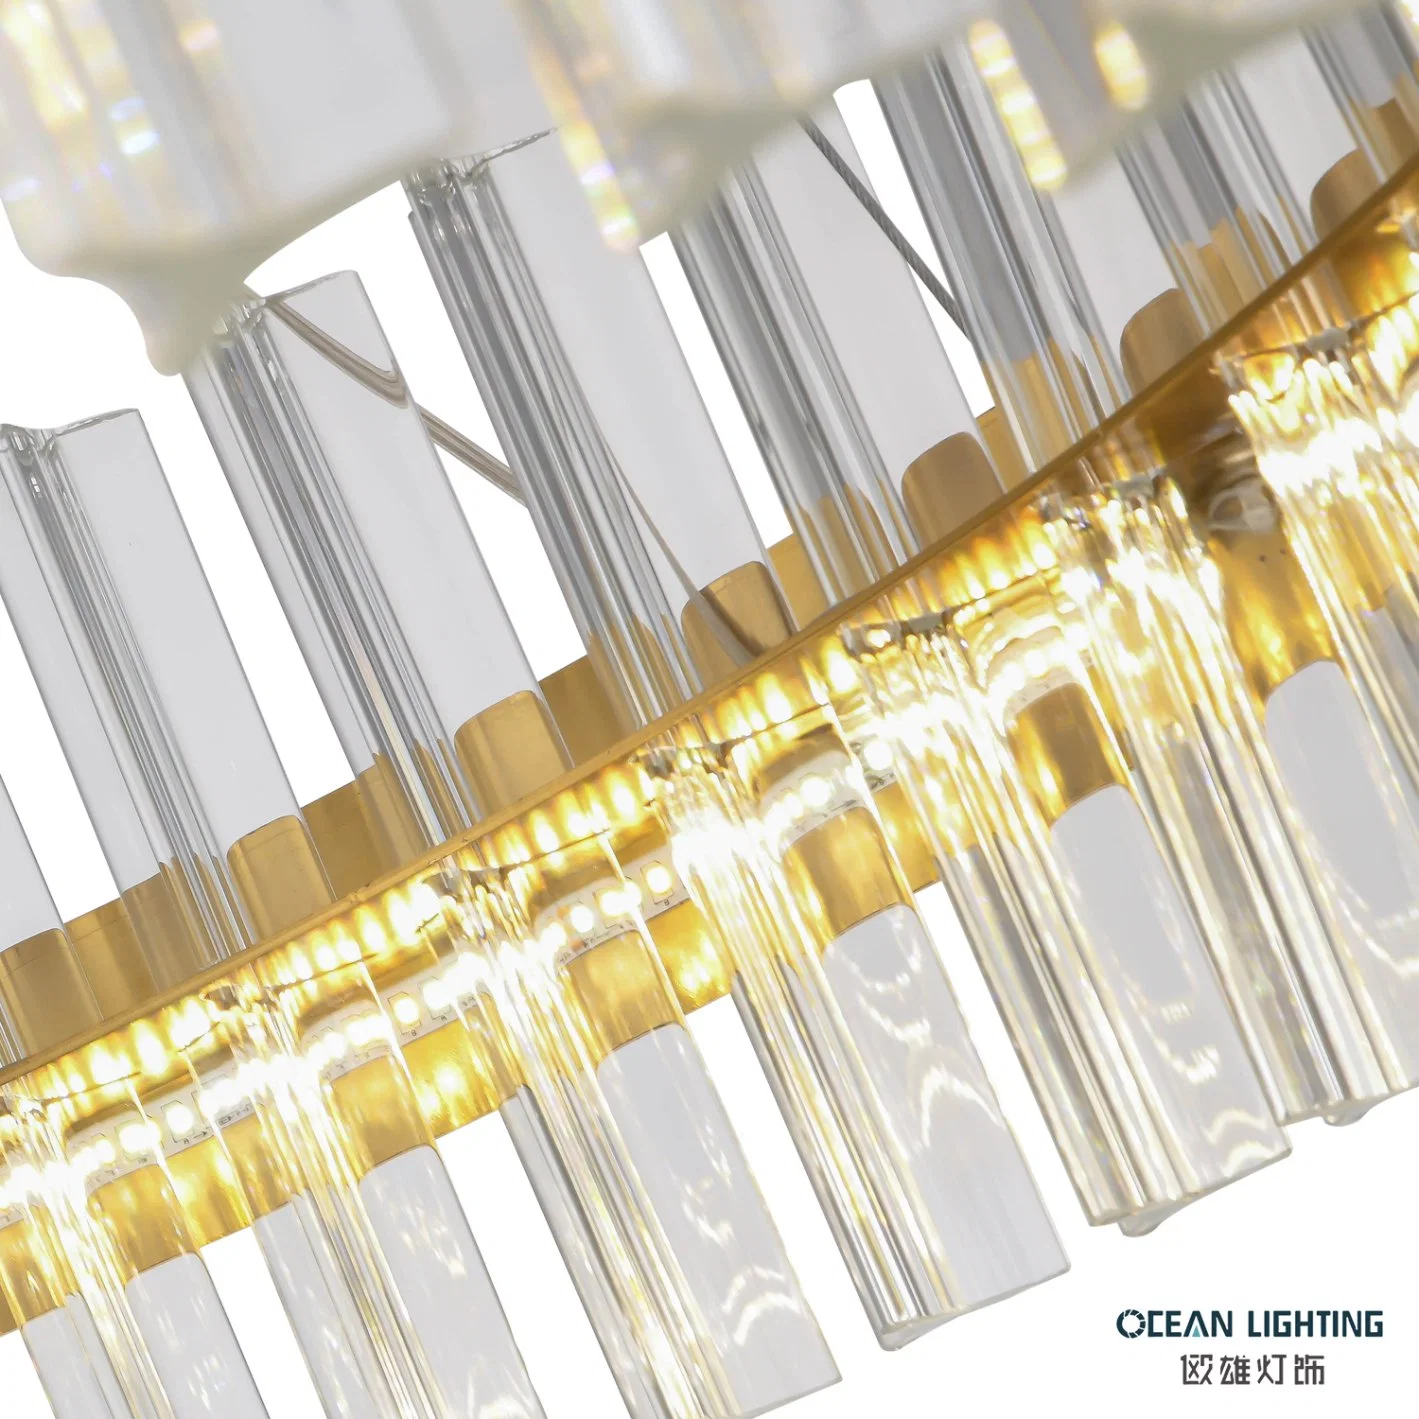 Океан освещение роскошь для использования внутри помещений, подвесной светодиодный индикатор K9 Подвесной светильник Crystal